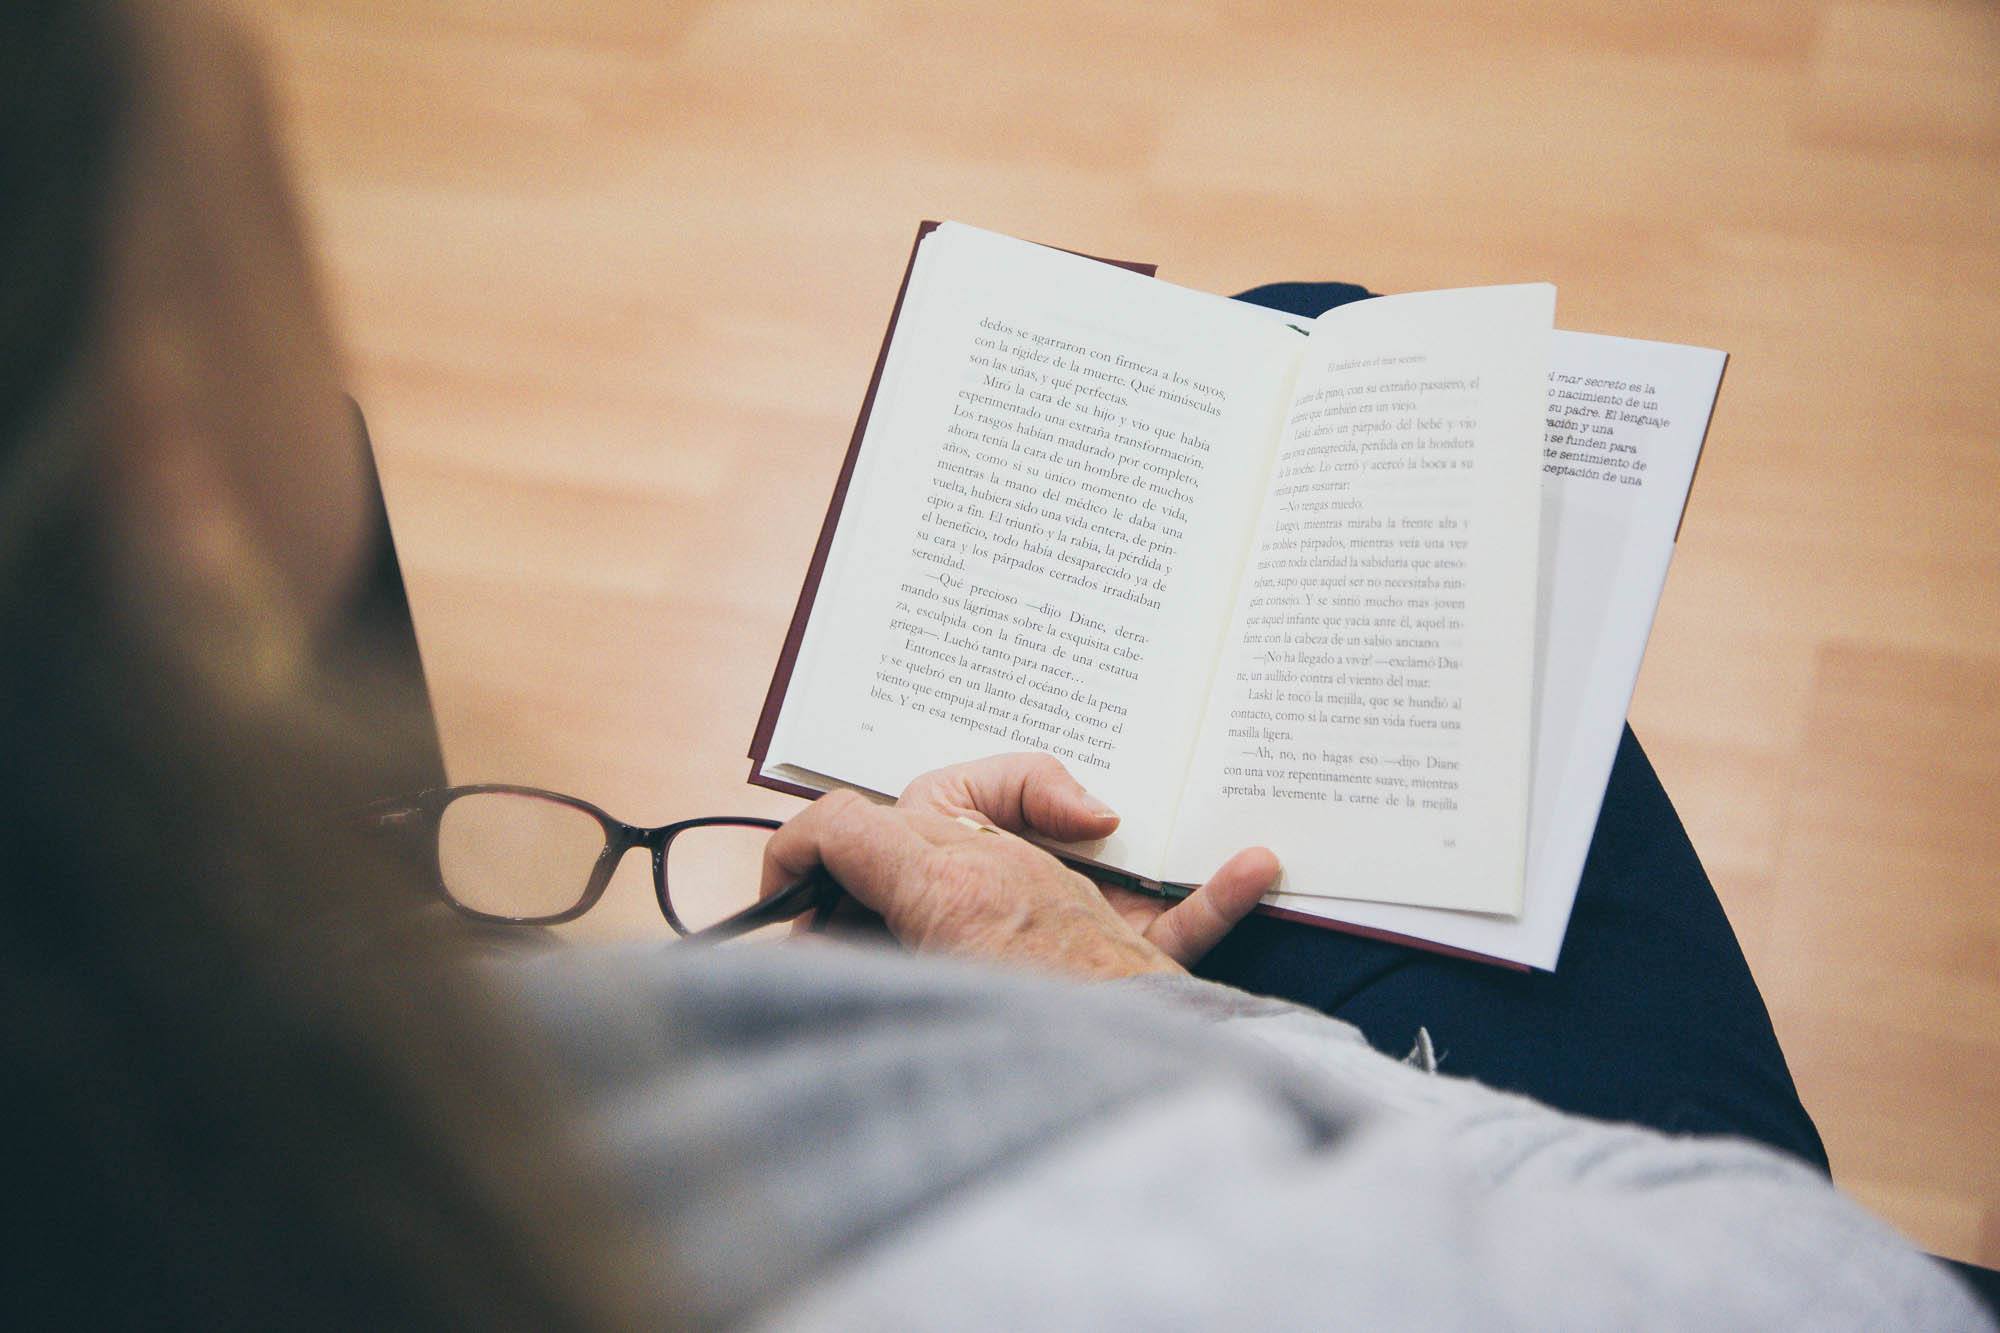 En la imagen aparece una persona leyendo un libro con una mano y en otra unas gafas de ver